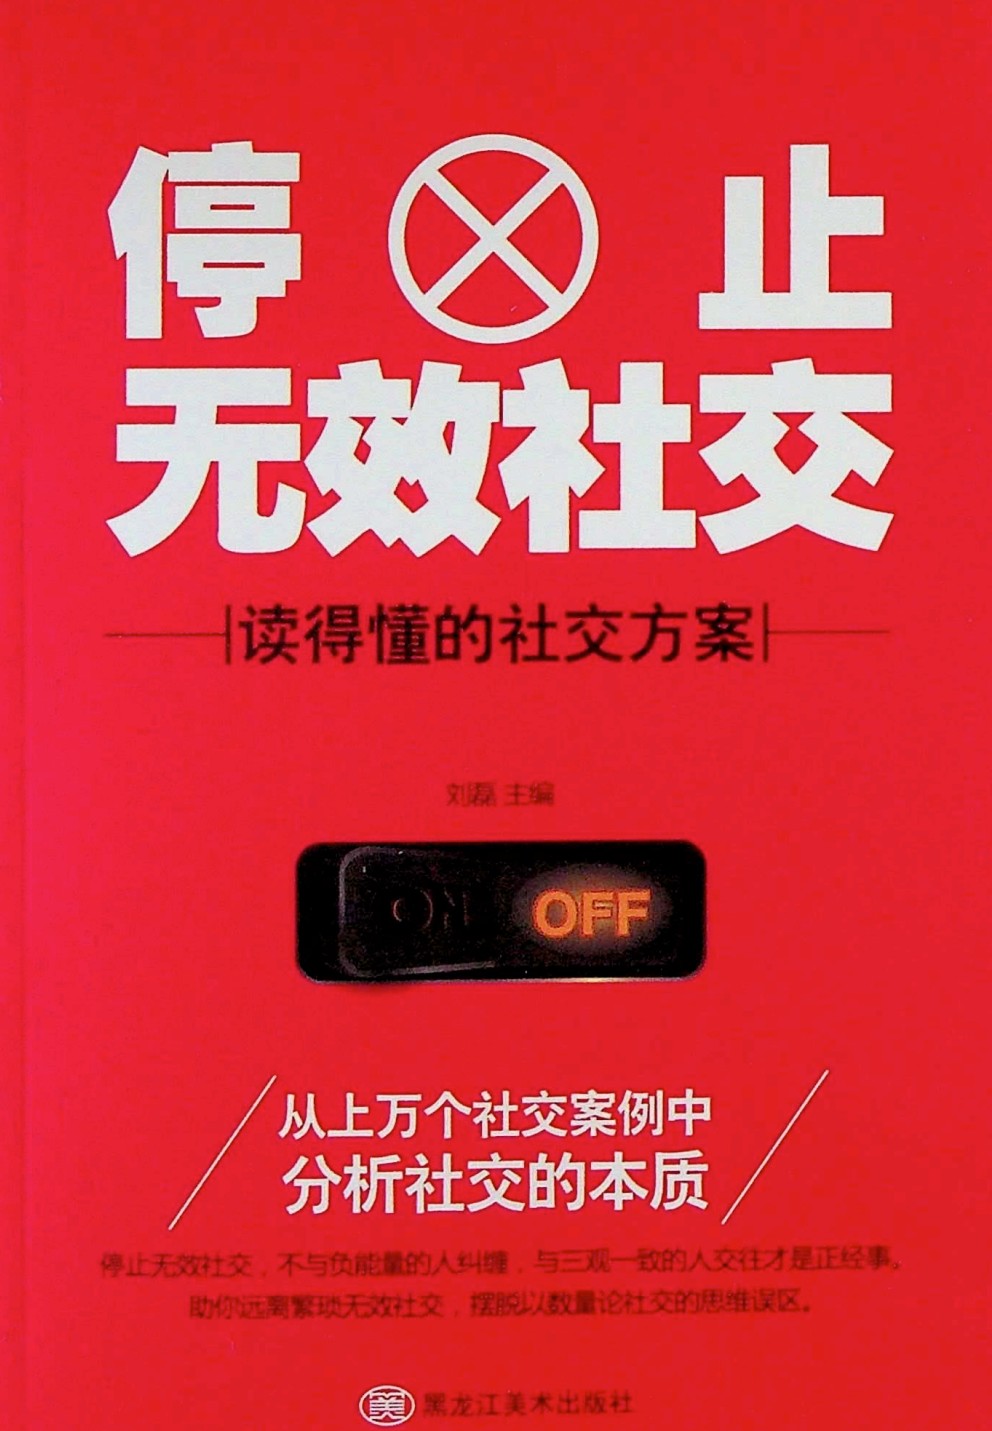 《停止无效社交》刘磊.pdf「百度网盘下载」PDF 电子书插图